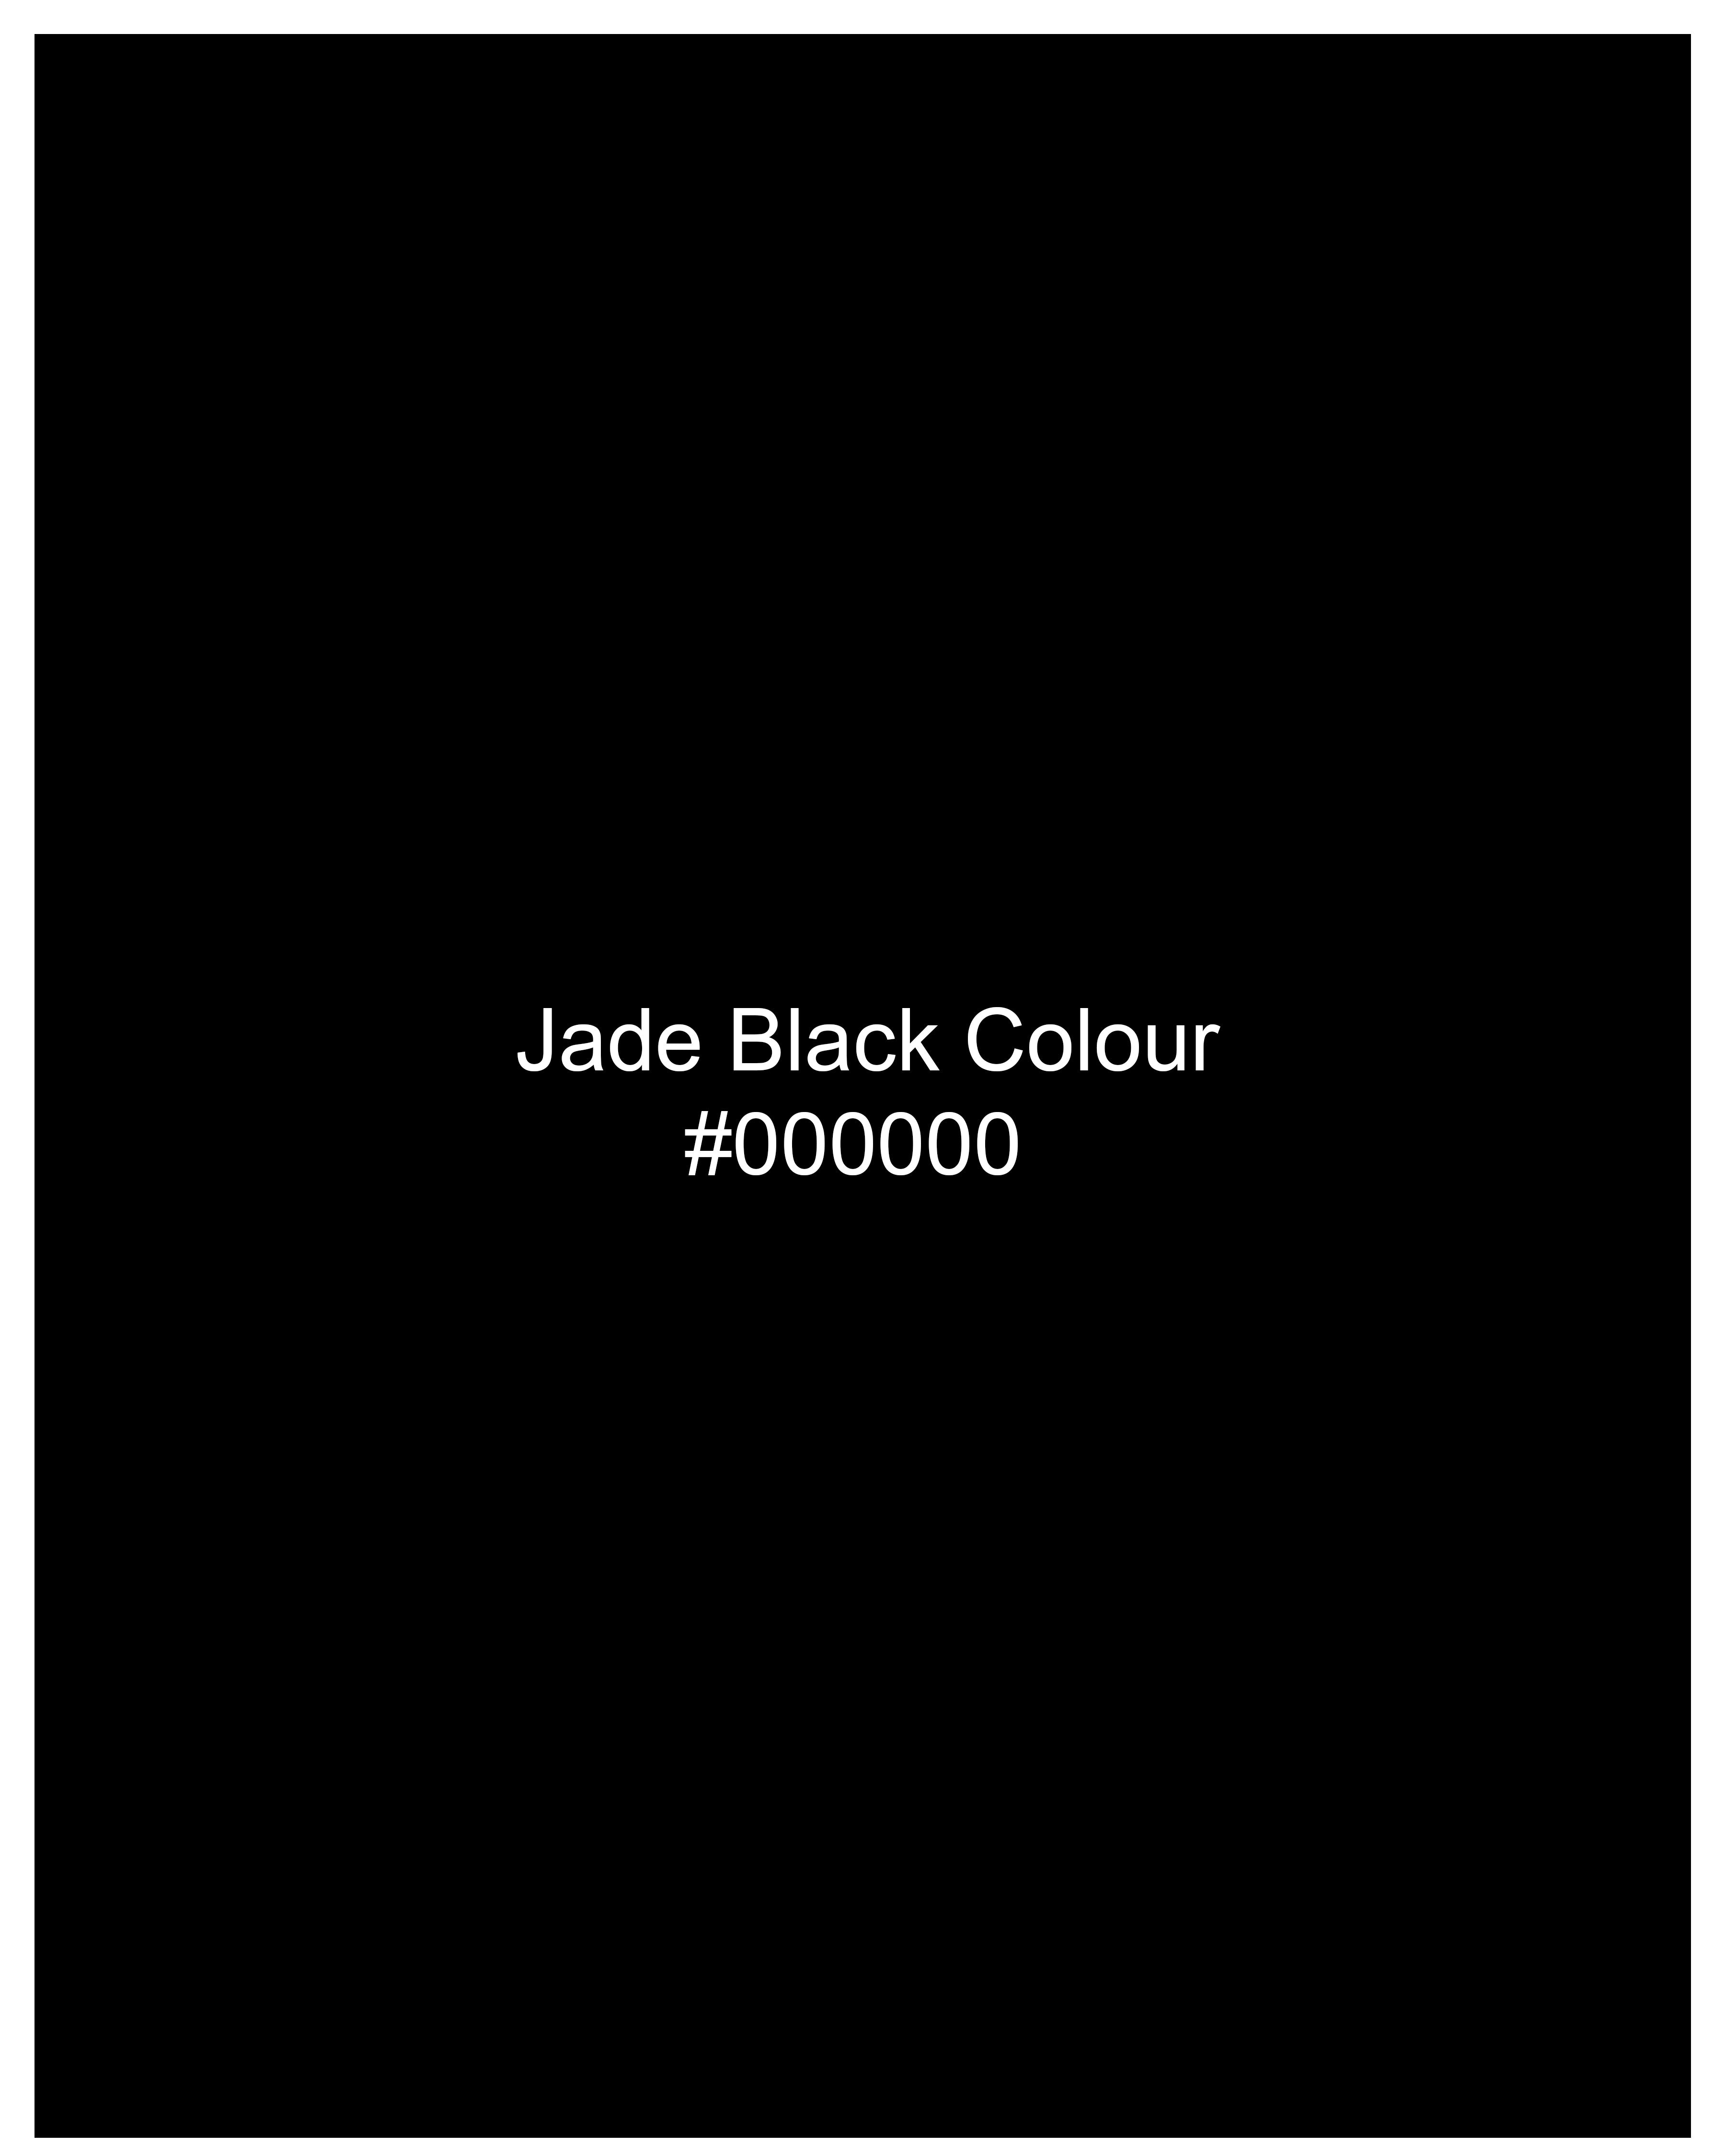 Jade Black Subtle Sheen Bandhgala/Mandarin Wool blend Blazer